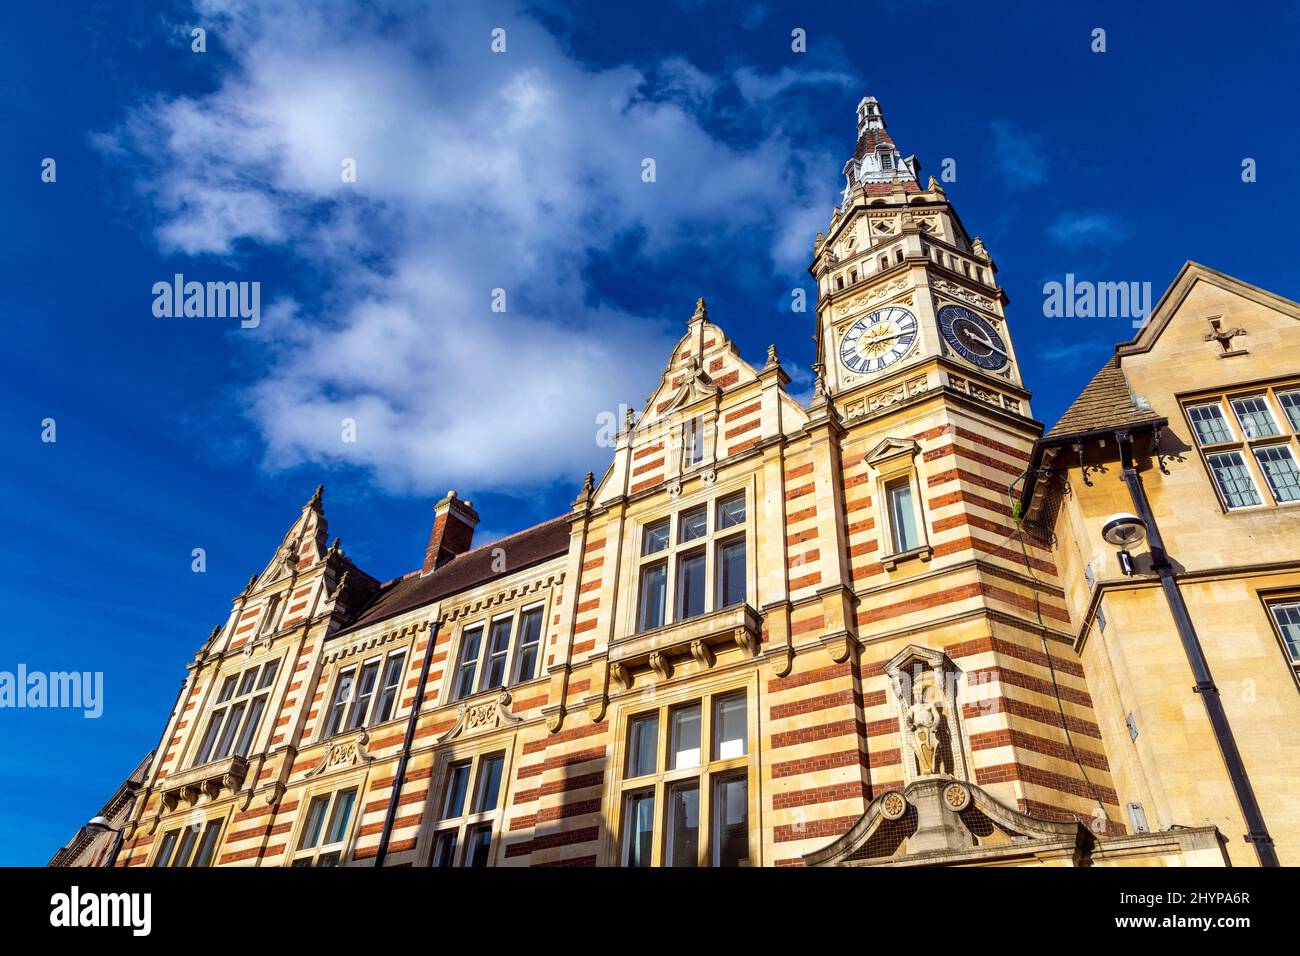 19th Century Victorian style Fosterss' Bank Building (qui abrite maintenant Lloyds Bank) conçu par Alfred Waterhouse, Cambridge, Royaume-Uni Banque D'Images